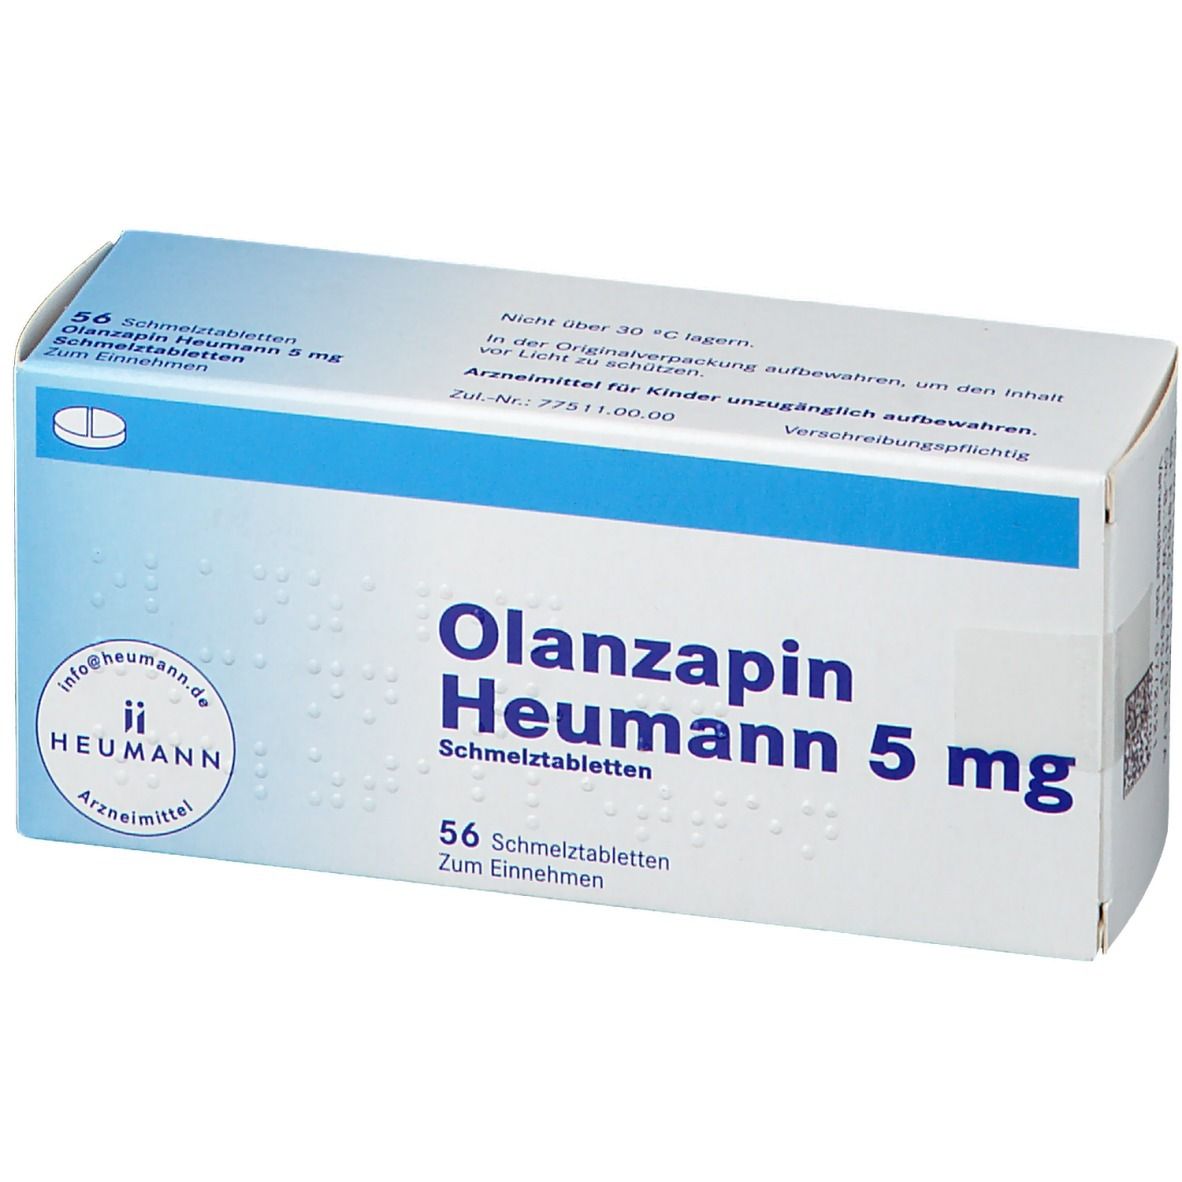 Olanzapin Heumann 5 mg Schmelztabletten